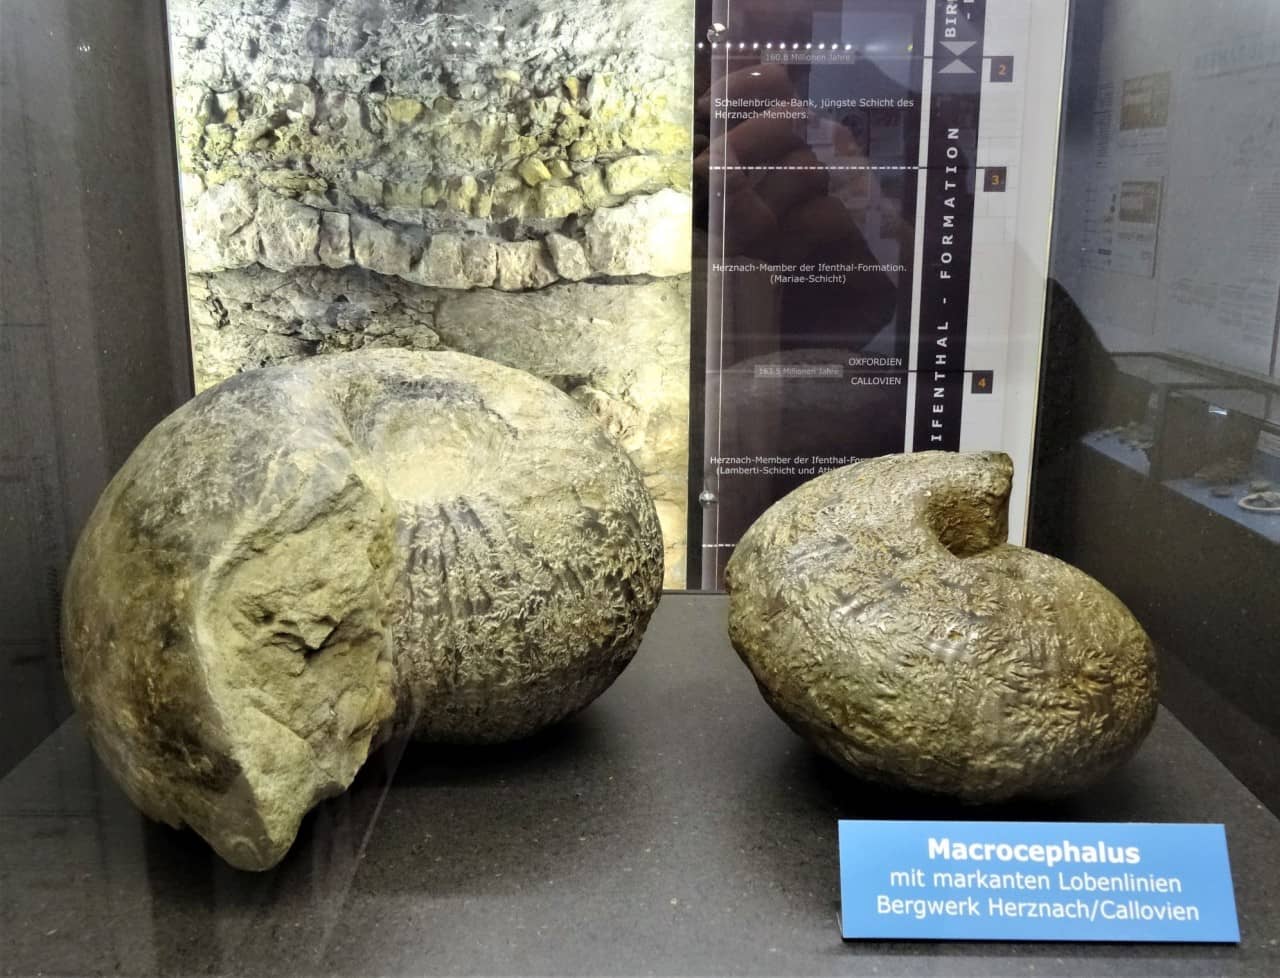 Bild von zwei Ammoniten in einem Schaukasten